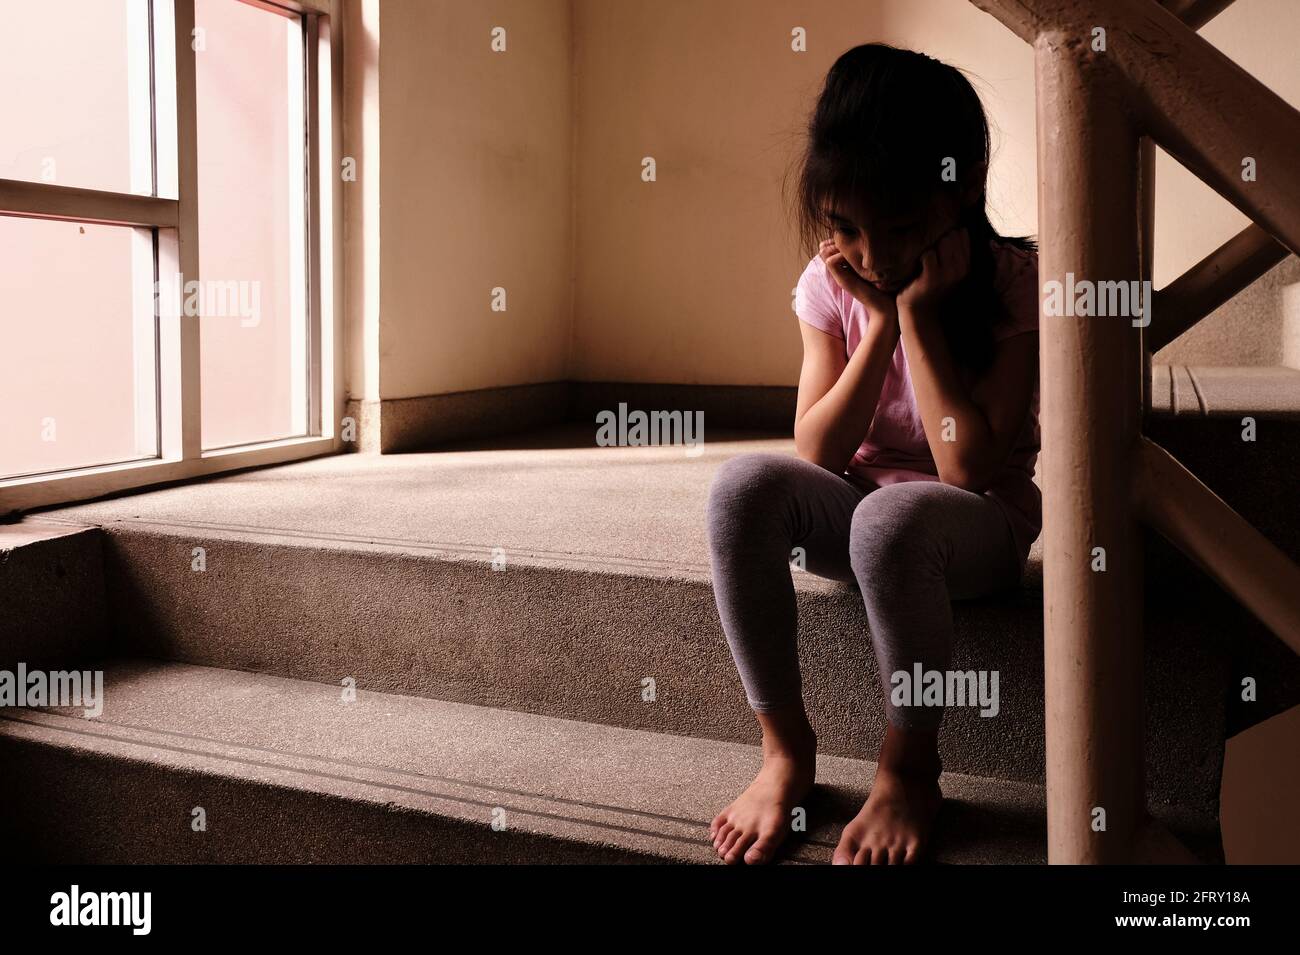 Konzept für Kindesmissbrauch. Ein trauriges und einsames junges Mädchen, das an einer Treppe in einem Gebäude sitzt, mit Licht durch ein Glasfenster im Hintergrund. Stockfoto